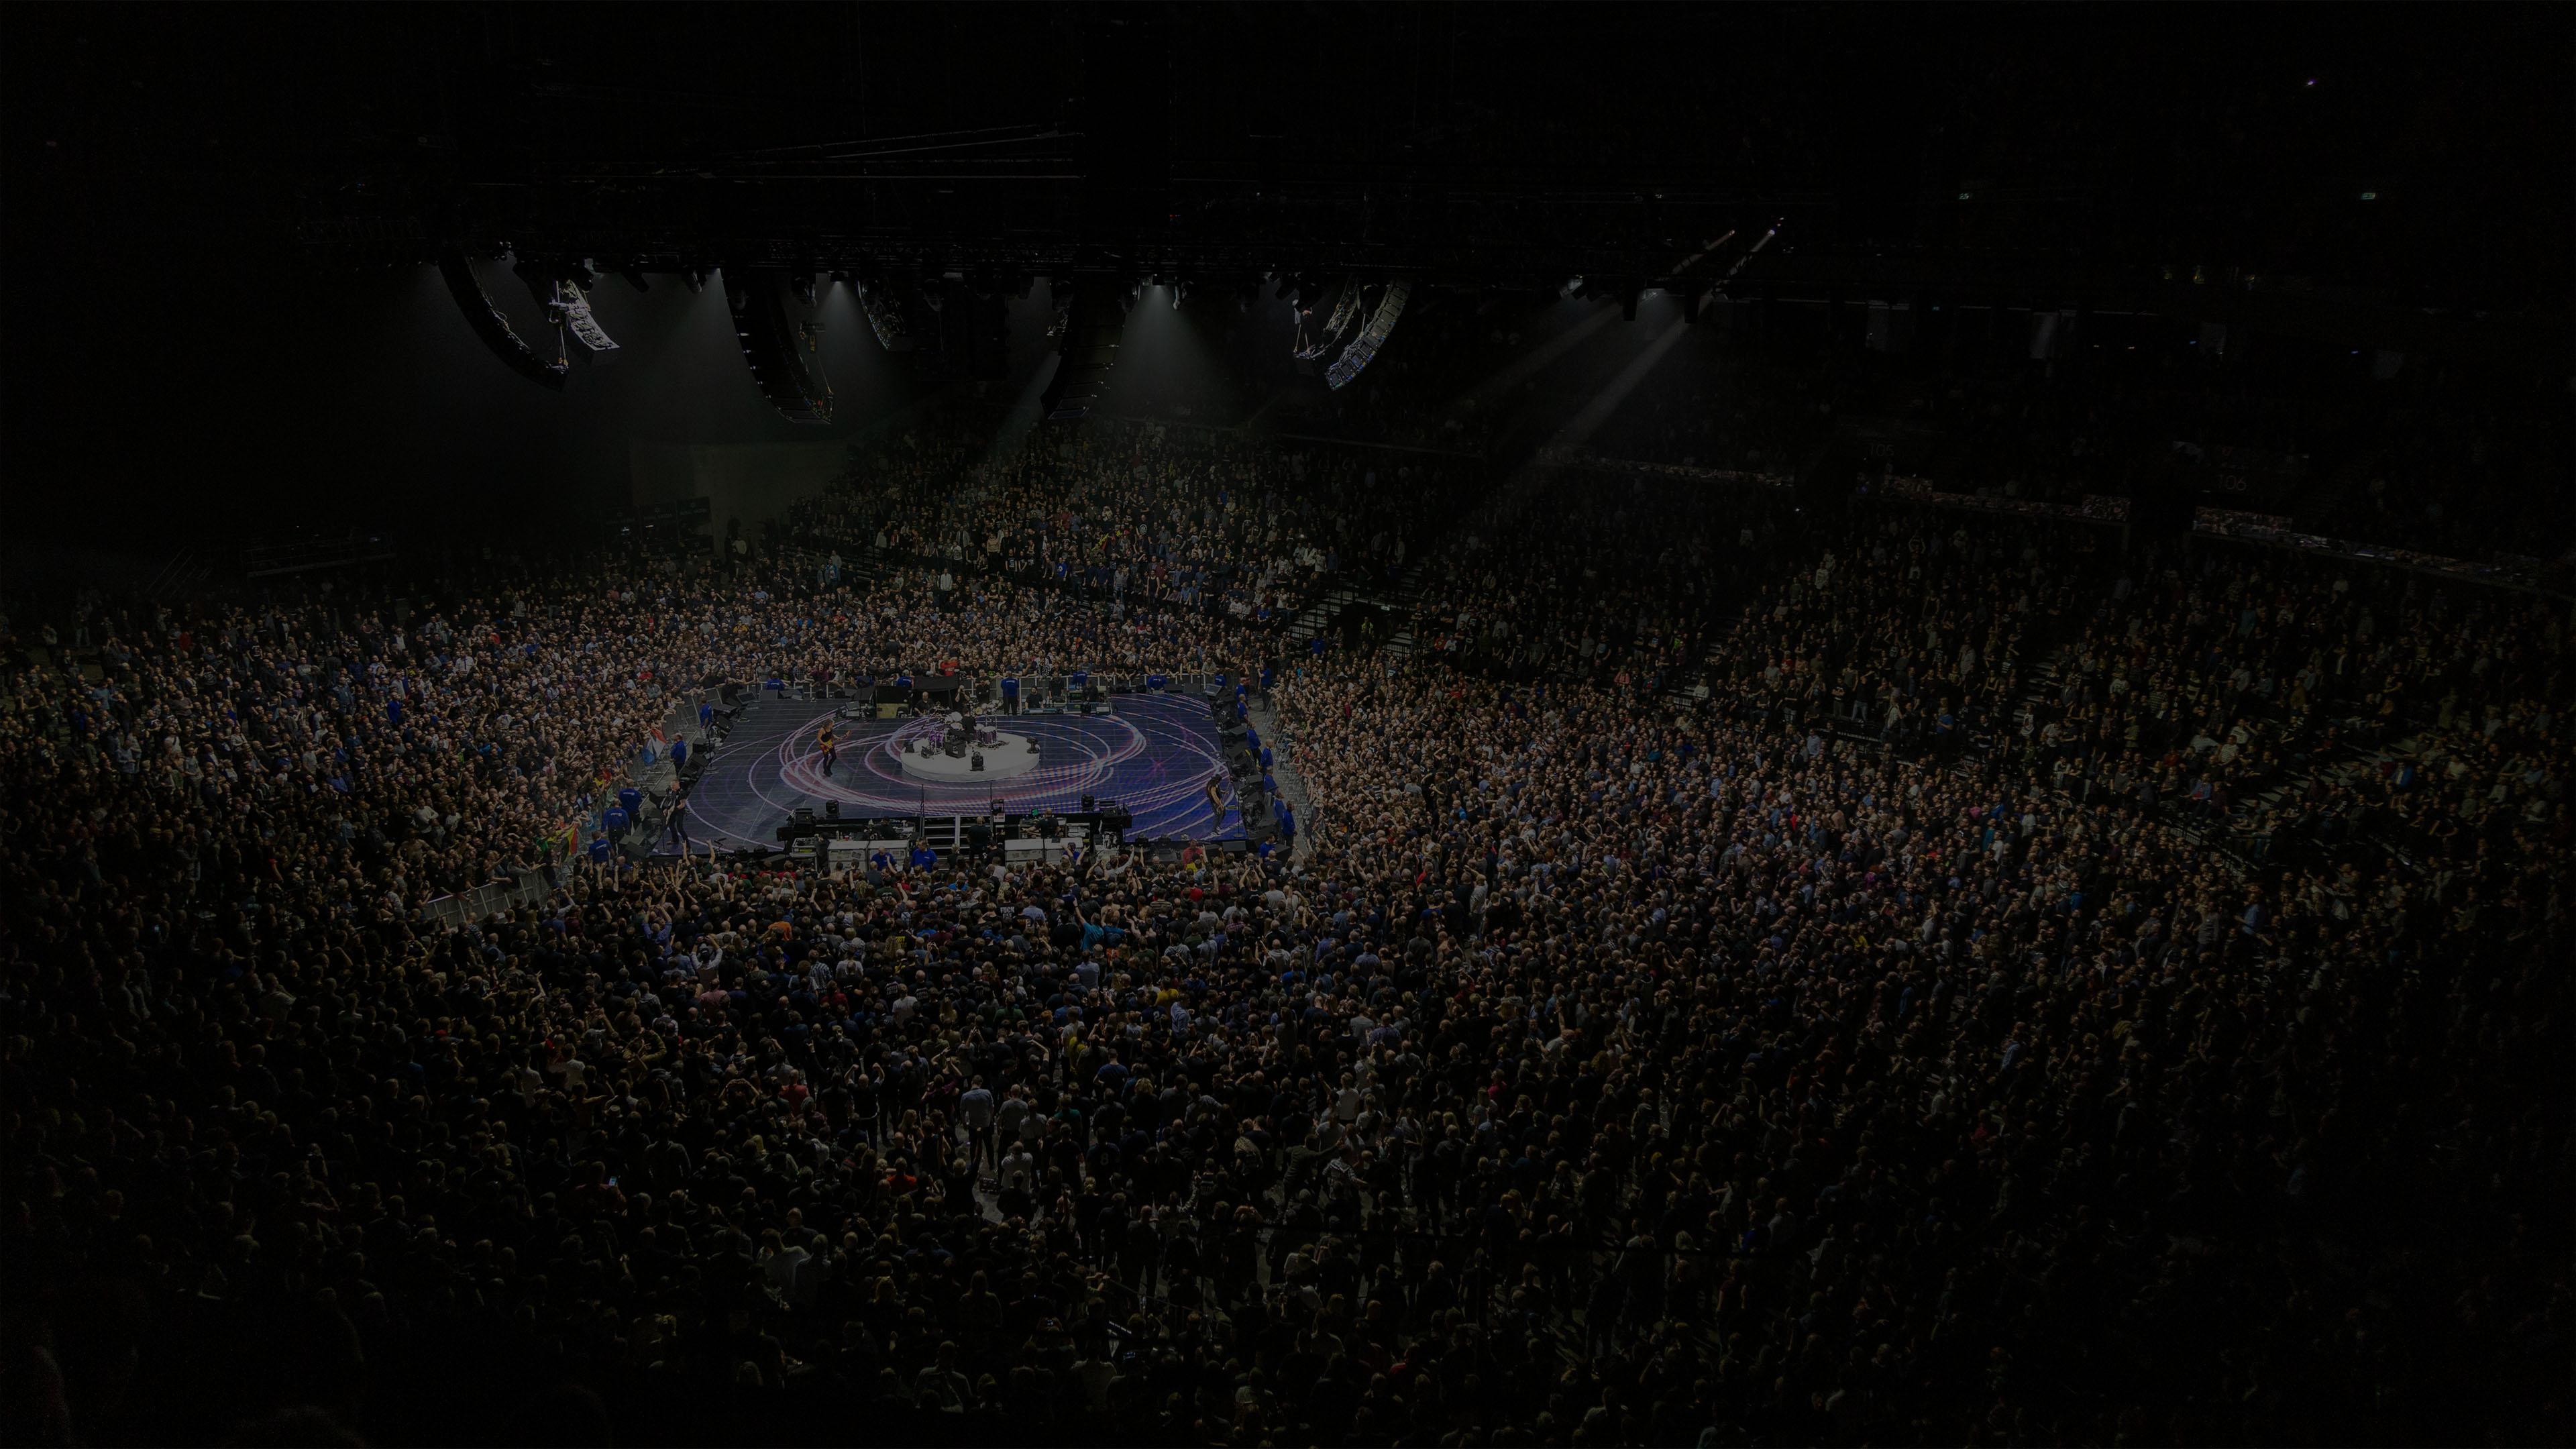 Metallica at Royal Arena in Copenhagen, Denmark on February 3, 2017